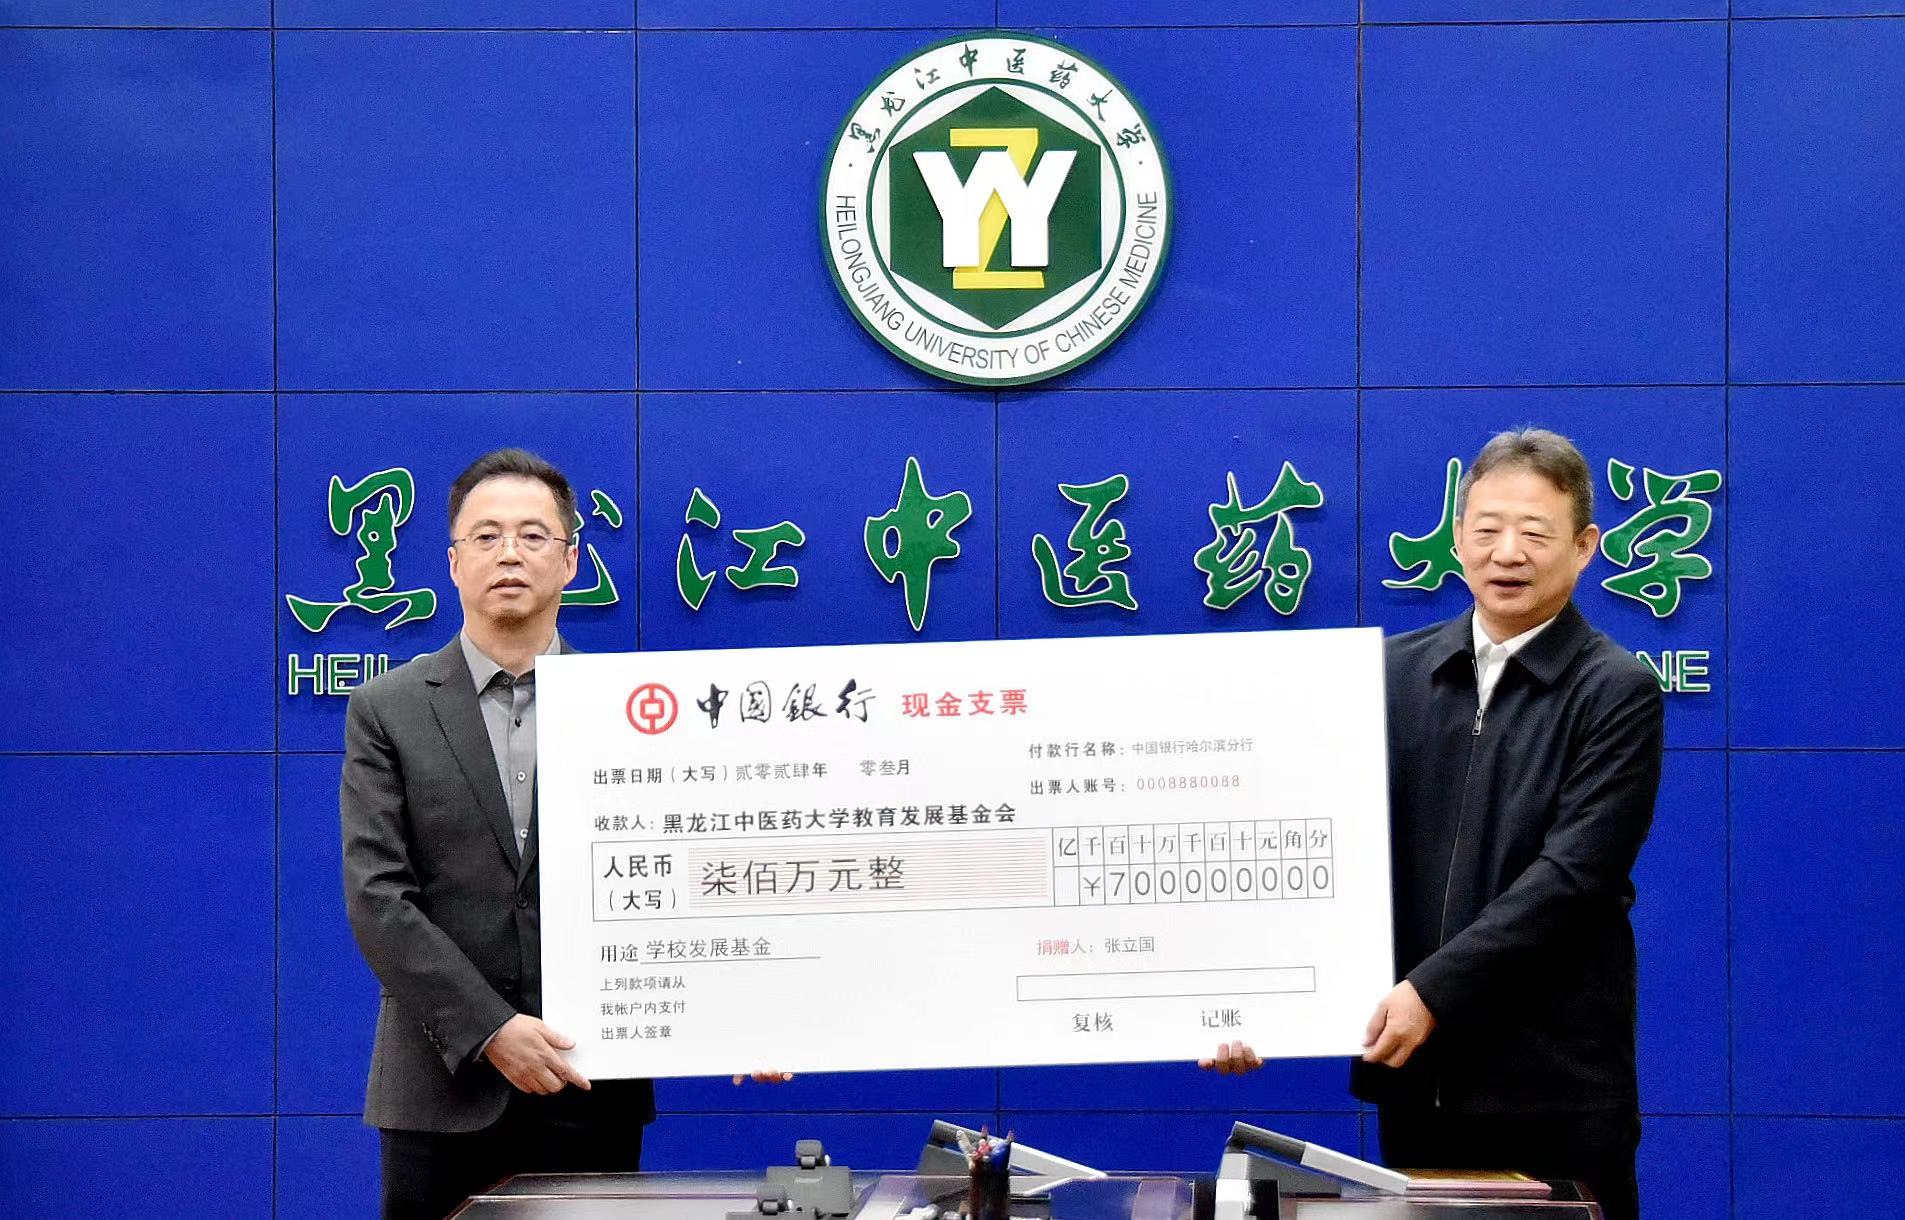 黑龍江中醫藥大學1982級校友張立國向學校捐贈發展基金700萬元